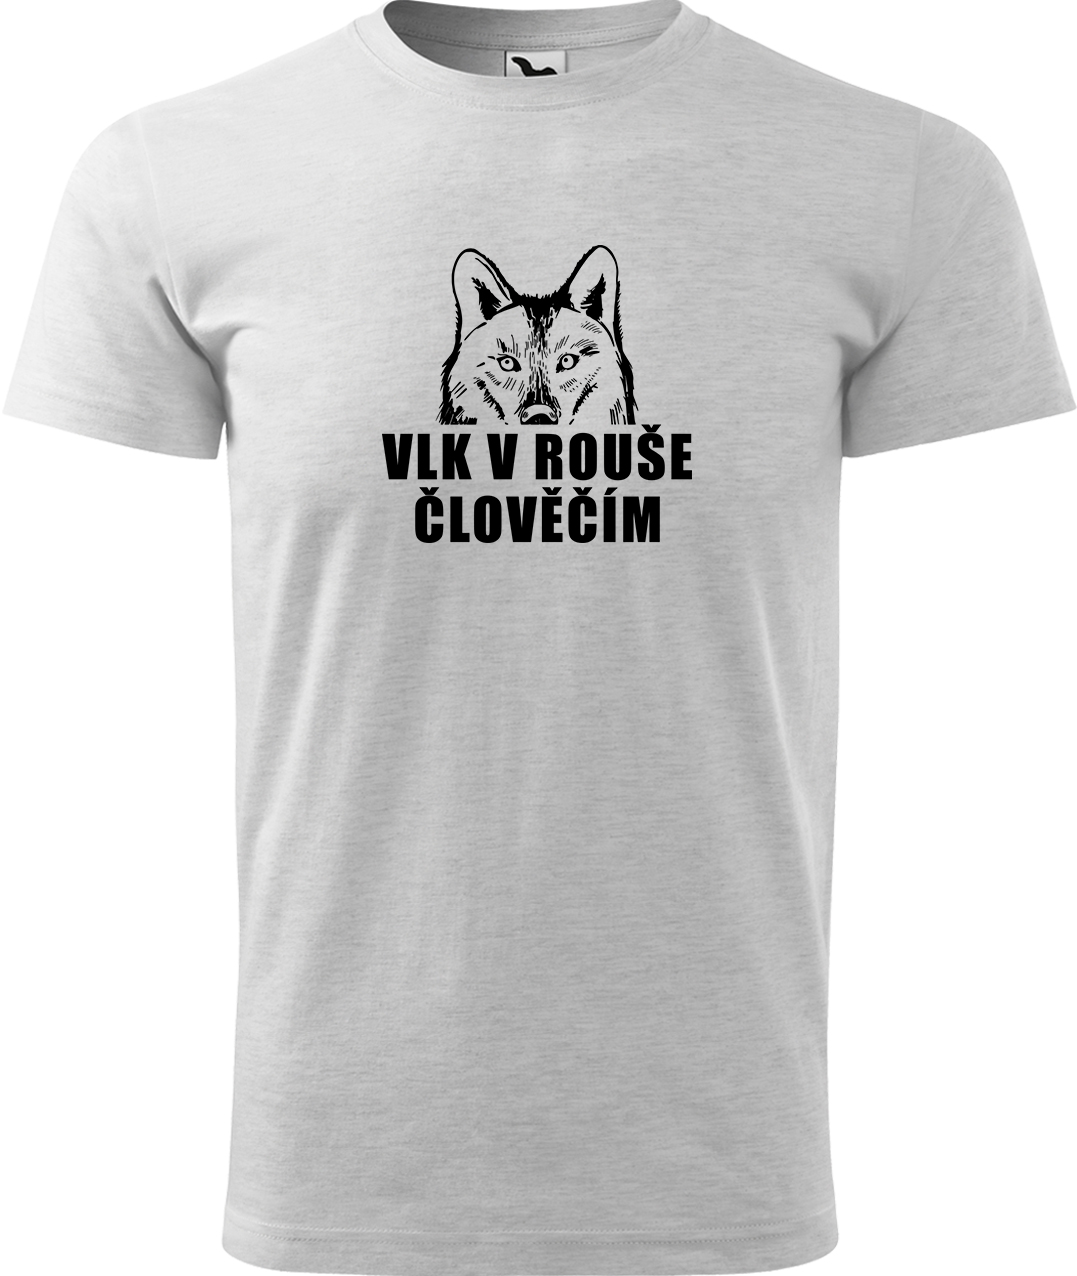 Pánské tričko s vlkem - Vlk v rouše člověčím Velikost: L, Barva: Světle šedý melír (03), Střih: pánský